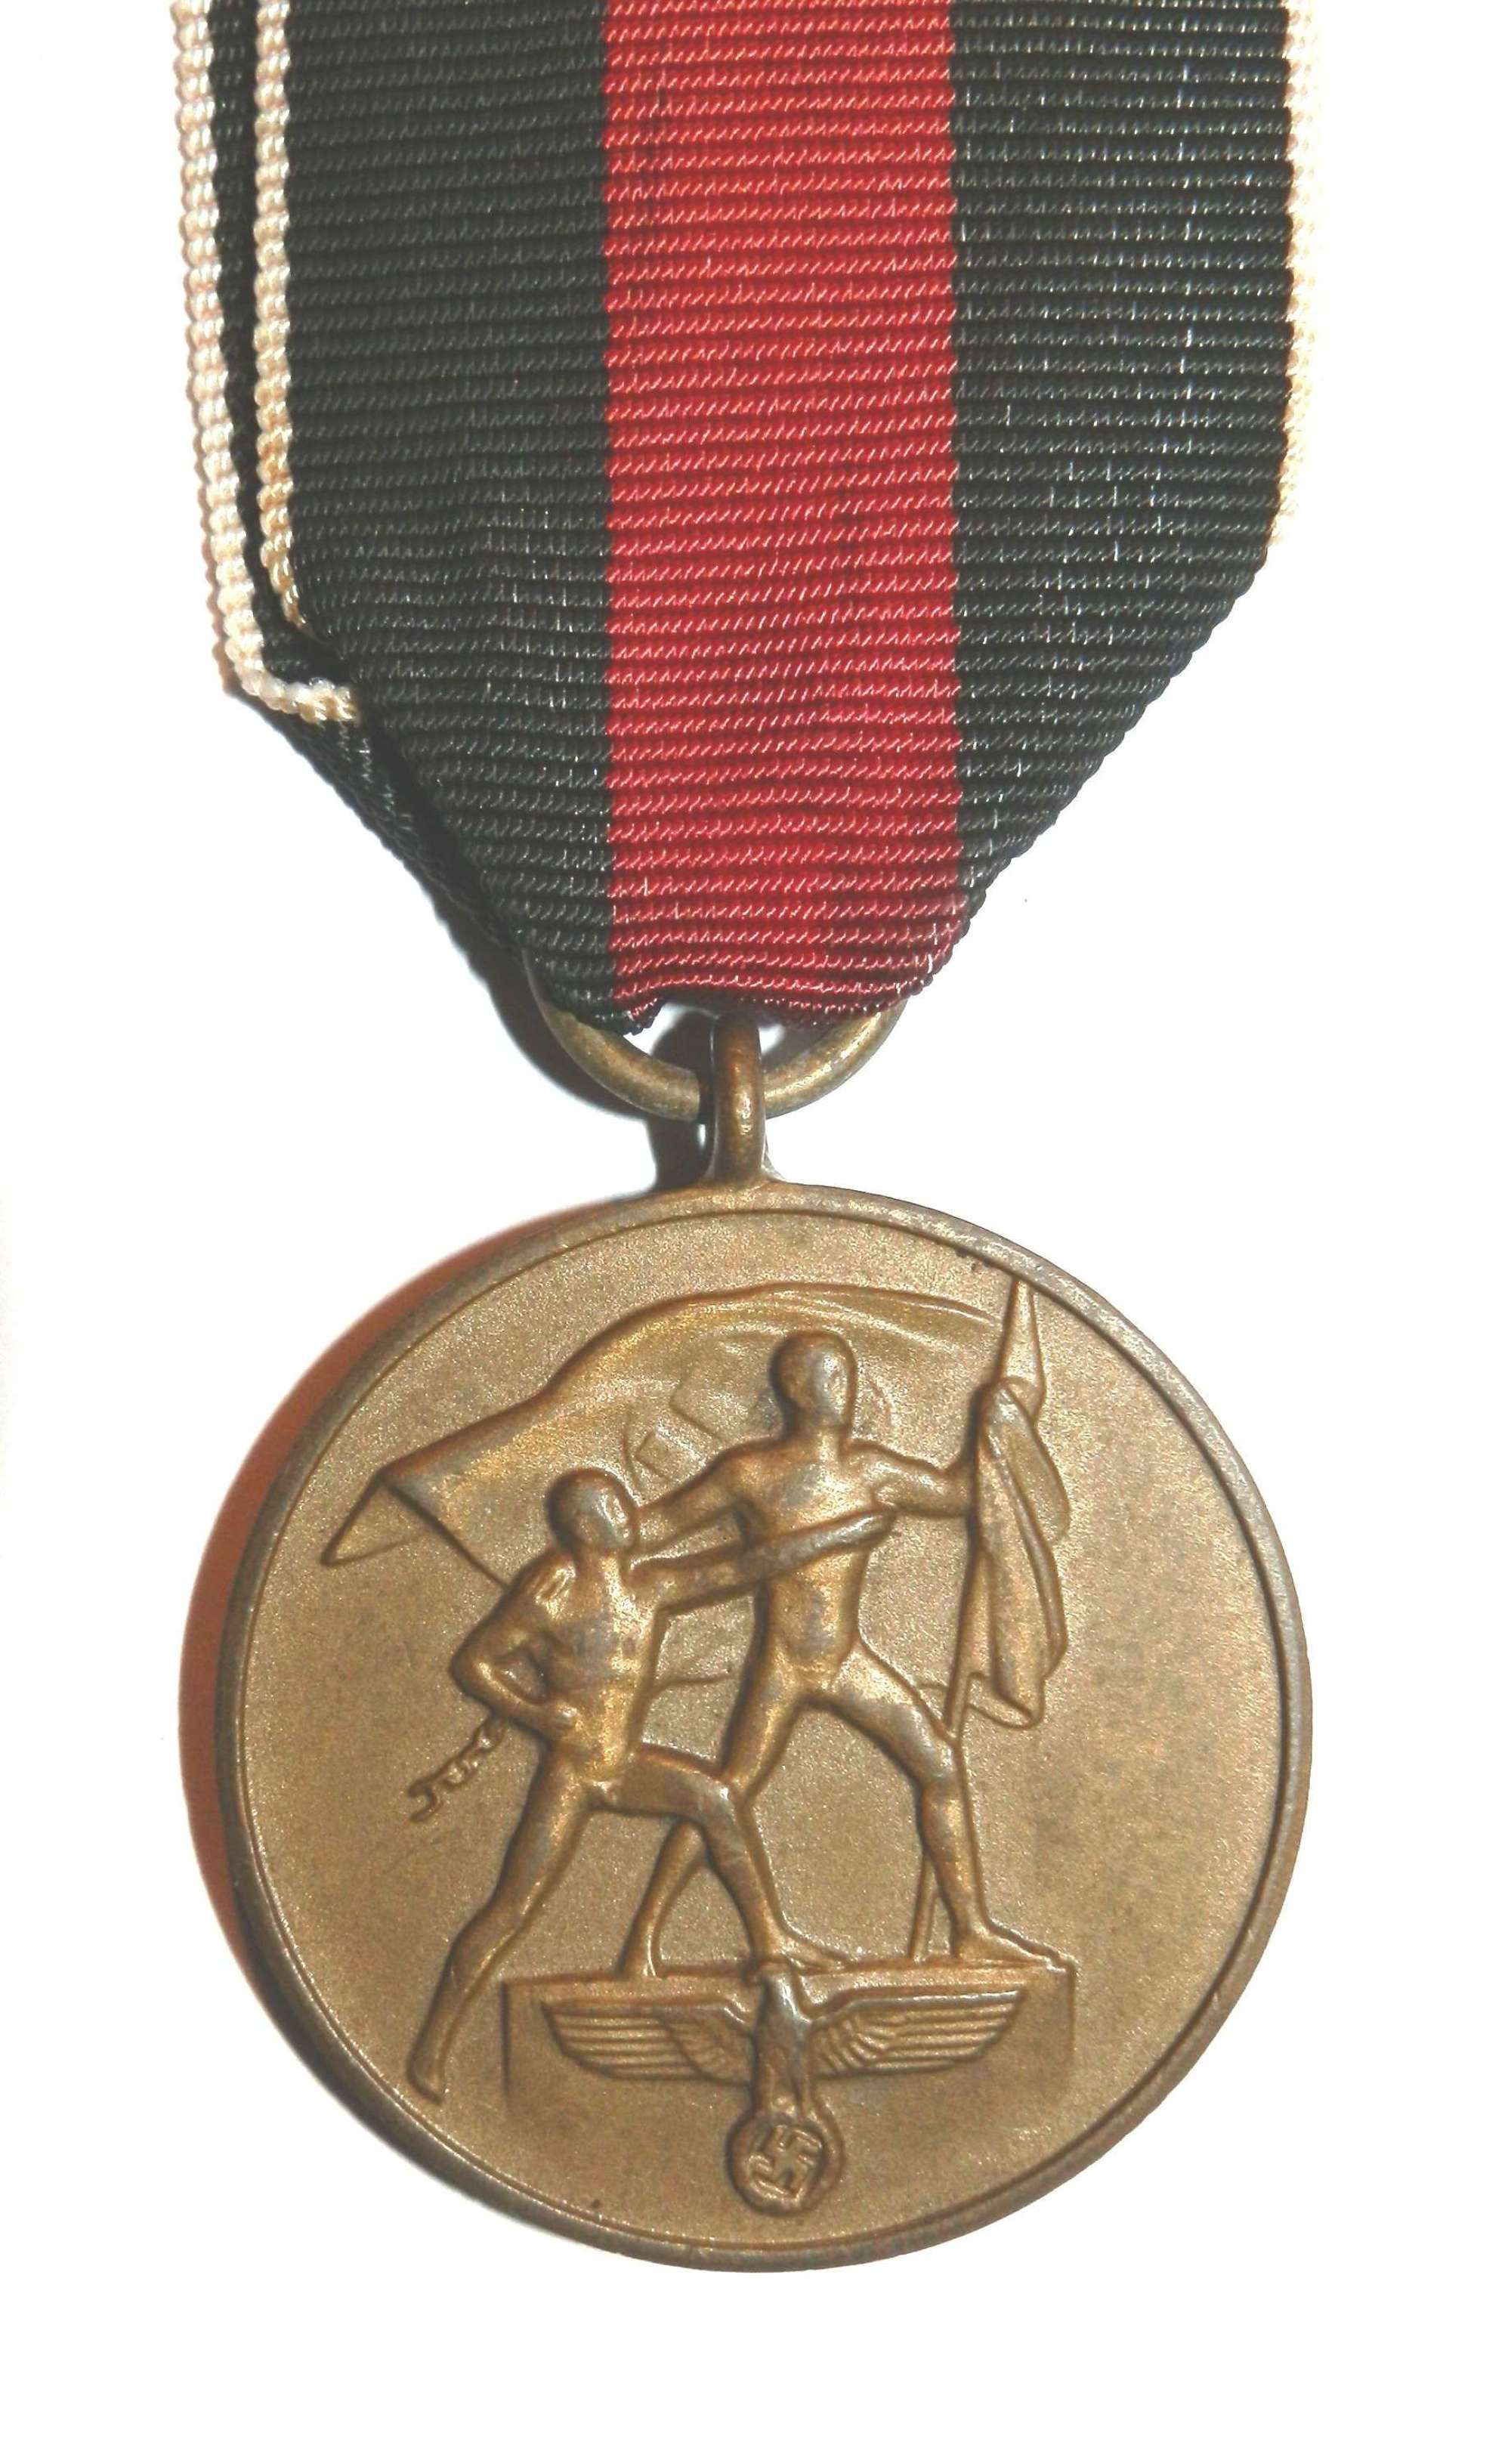 Anschluss German Czech 1st Oktober 1938 Medal.